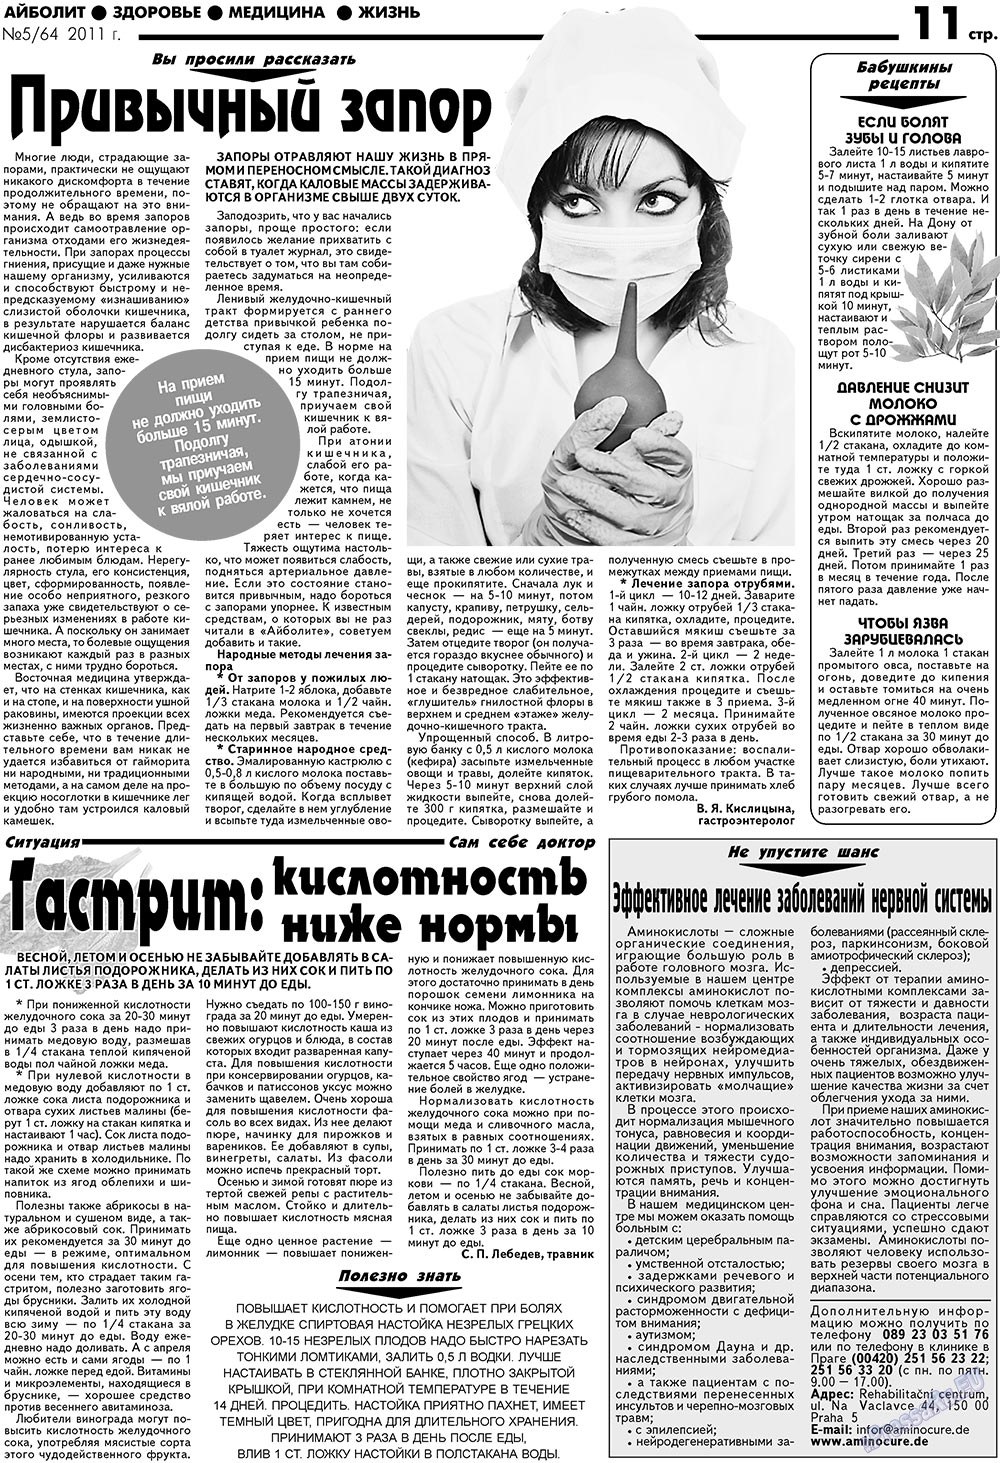 АйБолит, газета. 2011 №5 стр.11